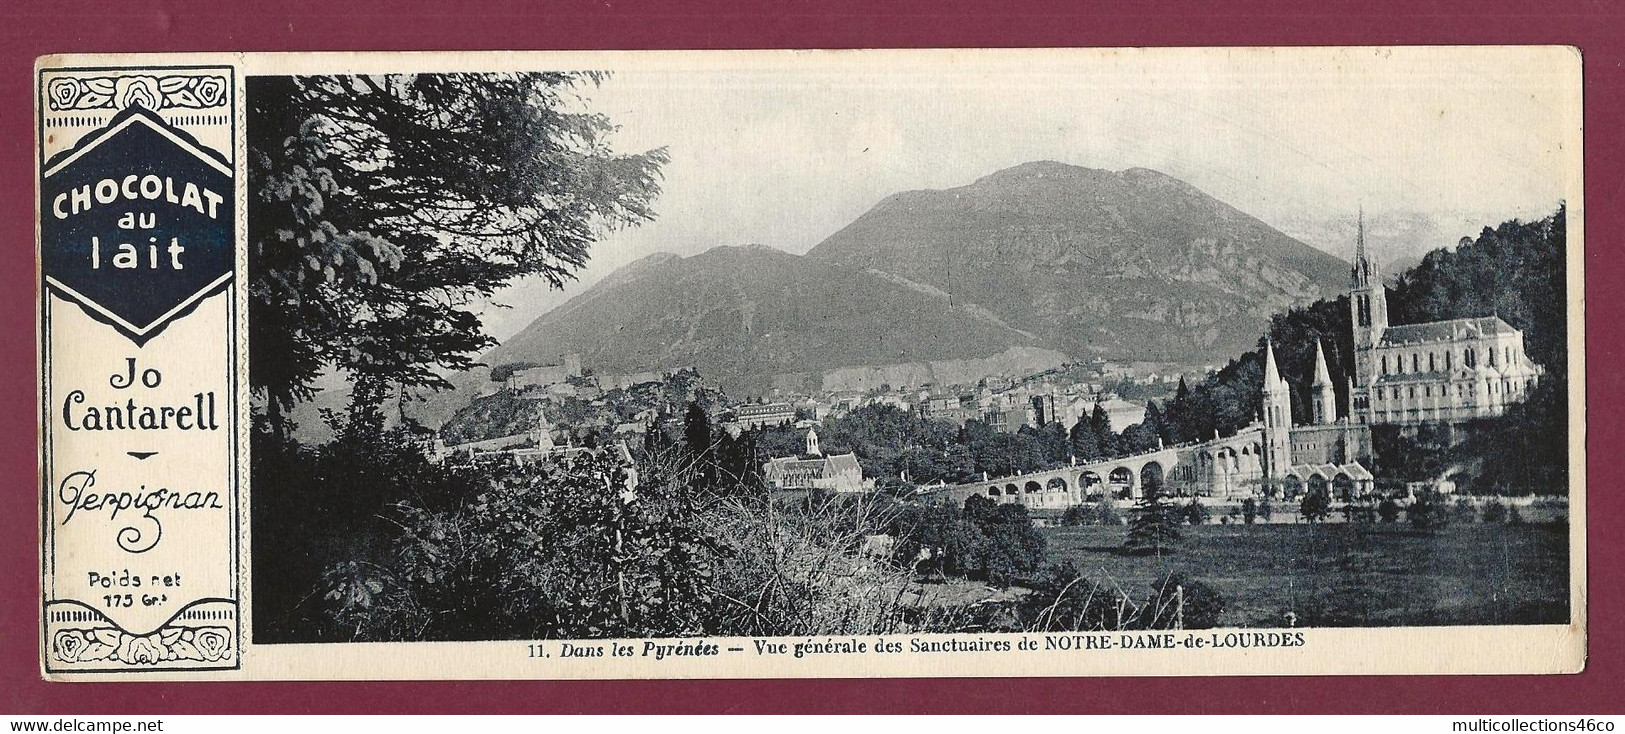 170222A - PUBLICITE CHOCOLAT AU LAIT JO CANTARELL PERPIGNAN - N°11 Pyrénées Sanctuaire NOTRE DAME DE LOURDES - Schokolade